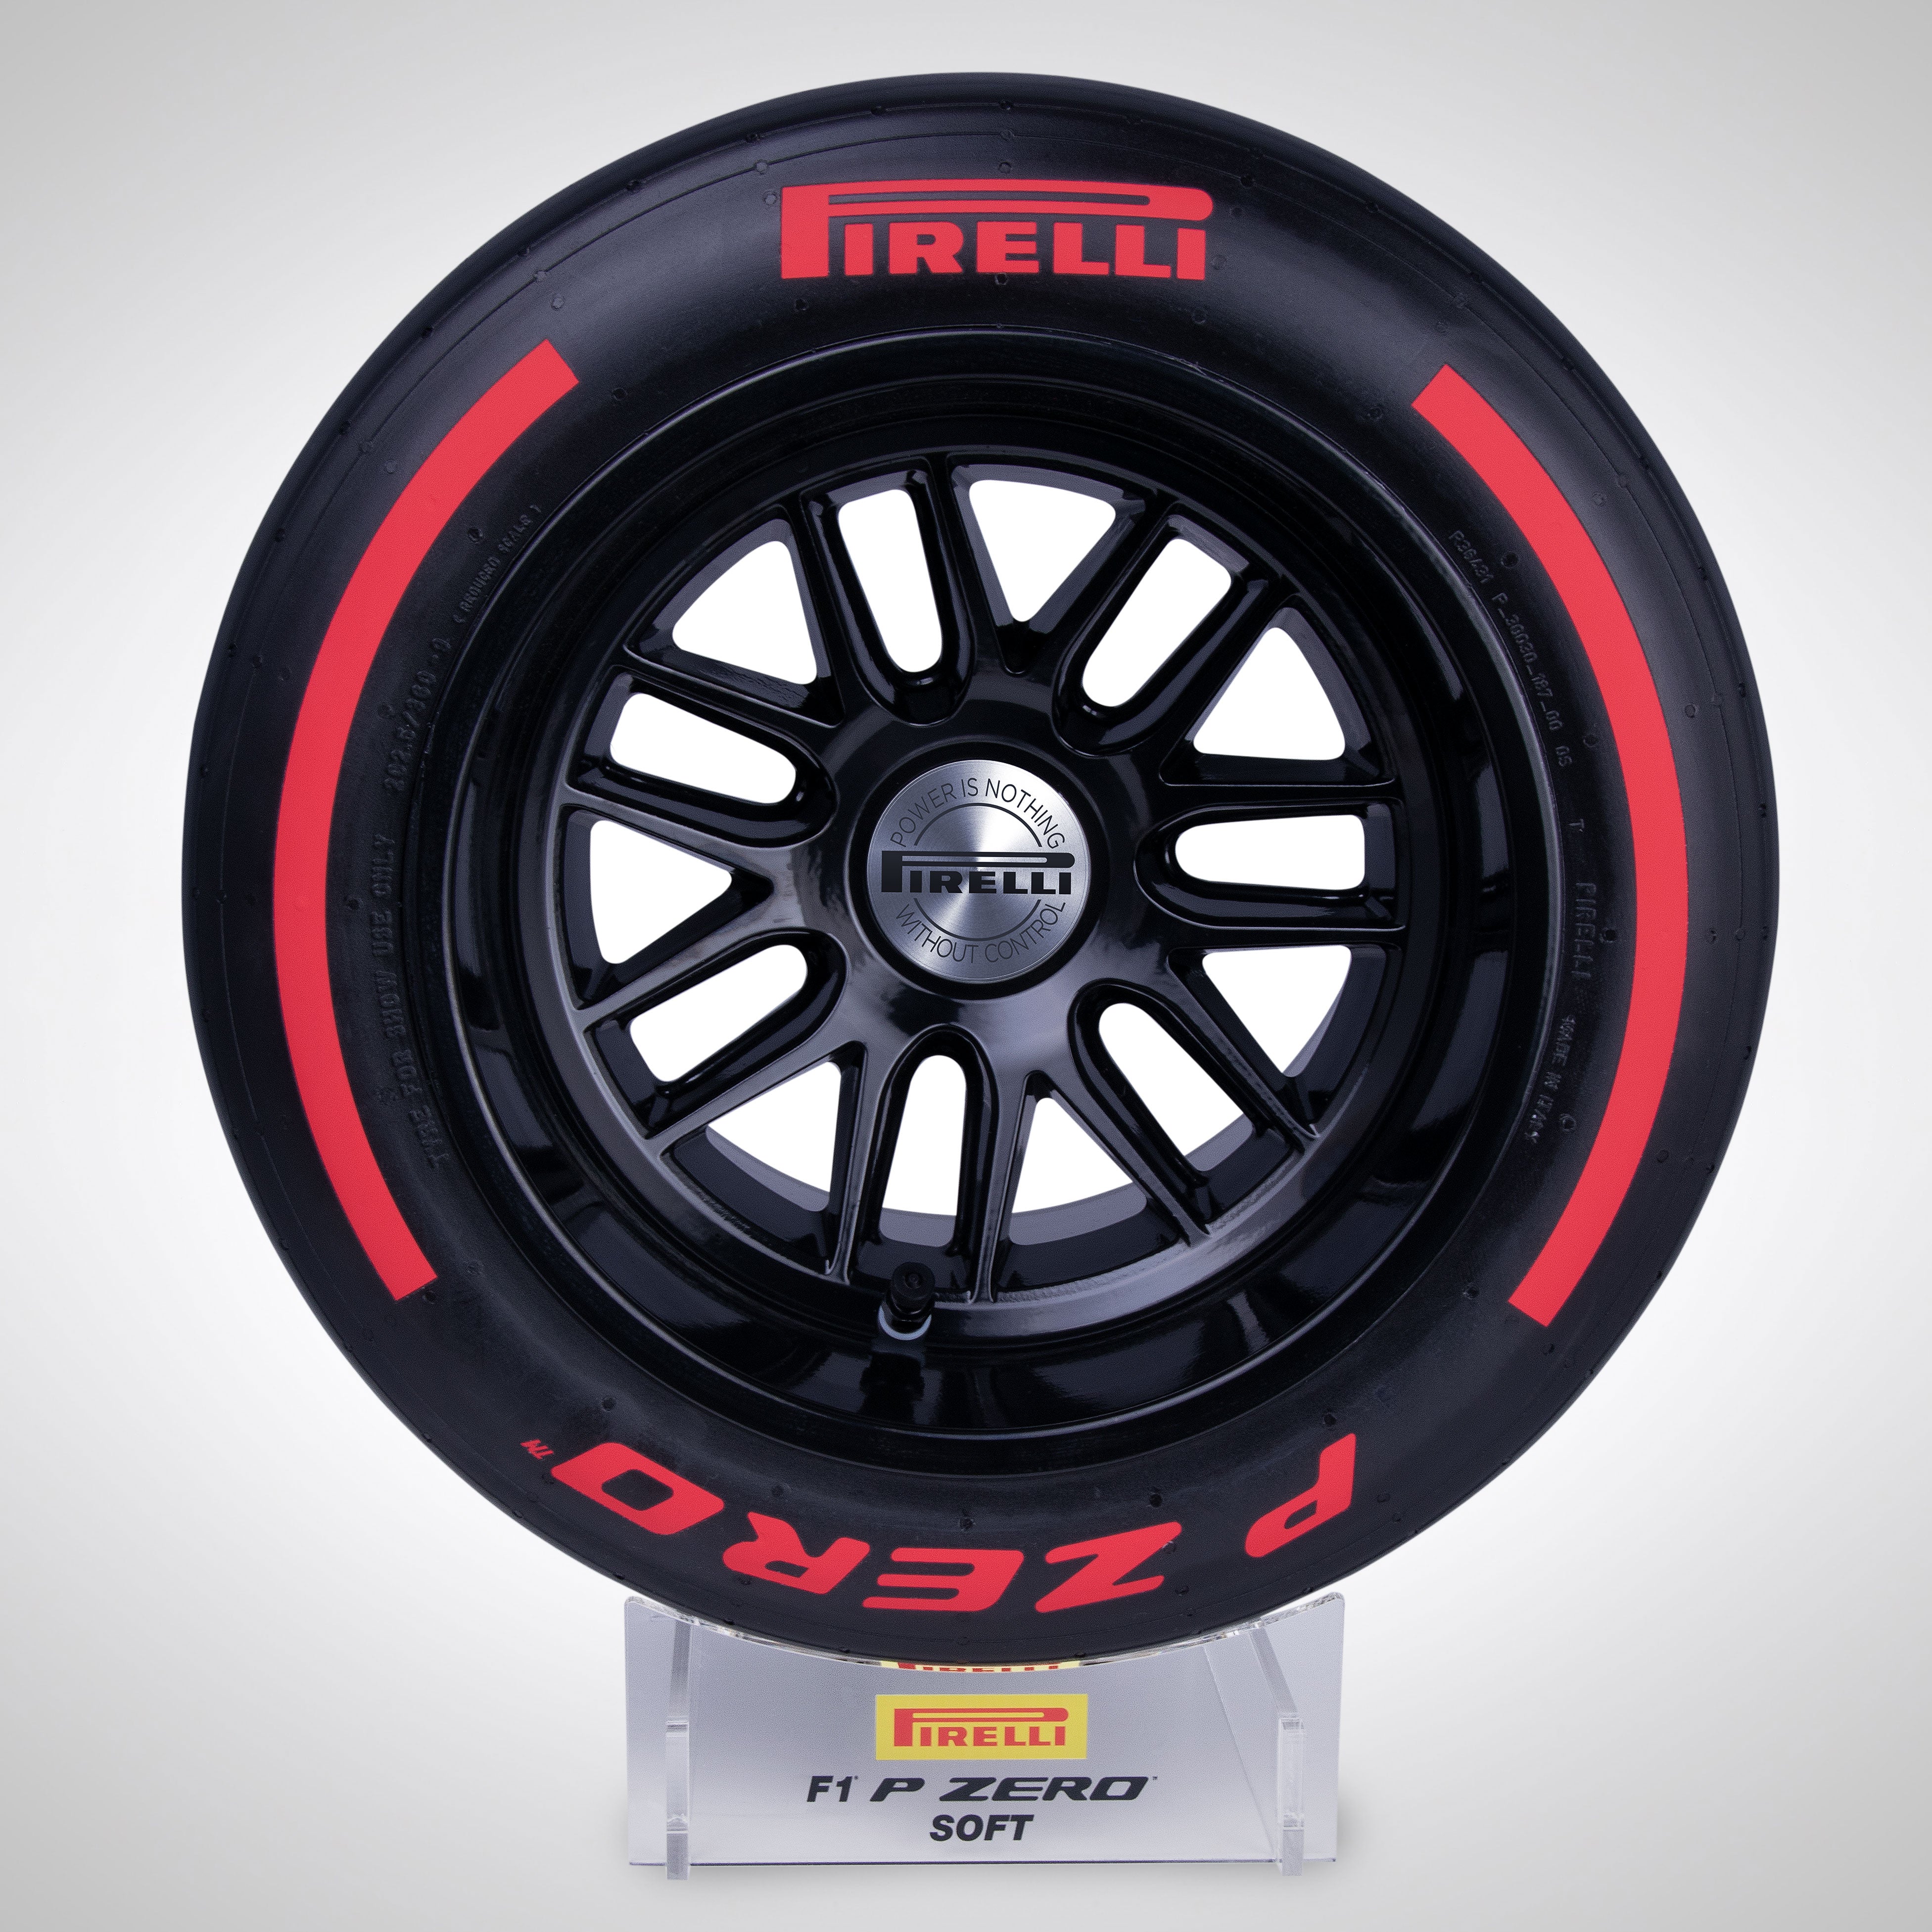 Pirelli Wind Tunnel Tyre 2023 - Red Soft Compound